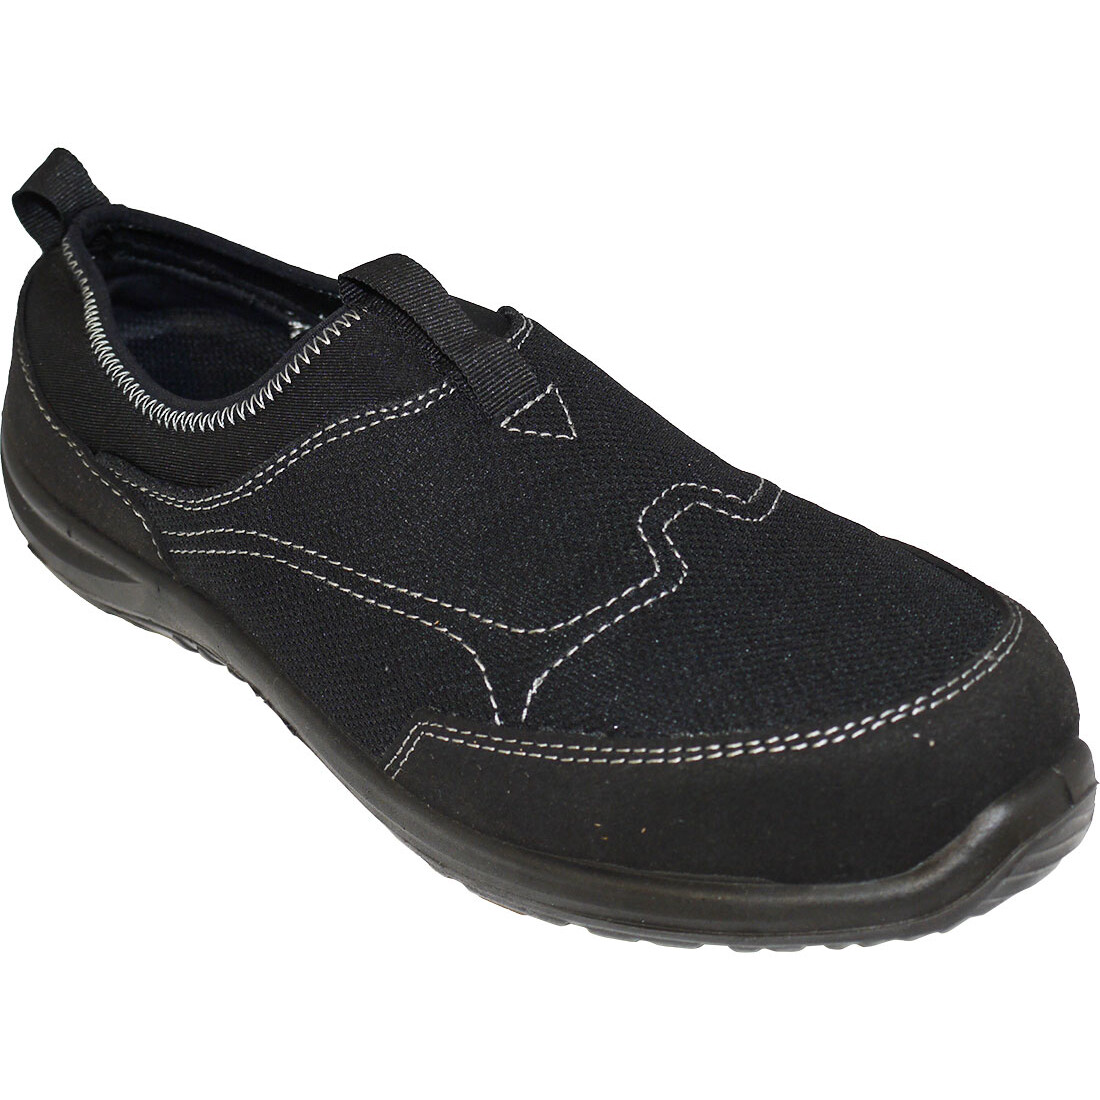 Portwest FT54 Steelite Tegid Slip On Trainer Shoe S1P - Black from ...